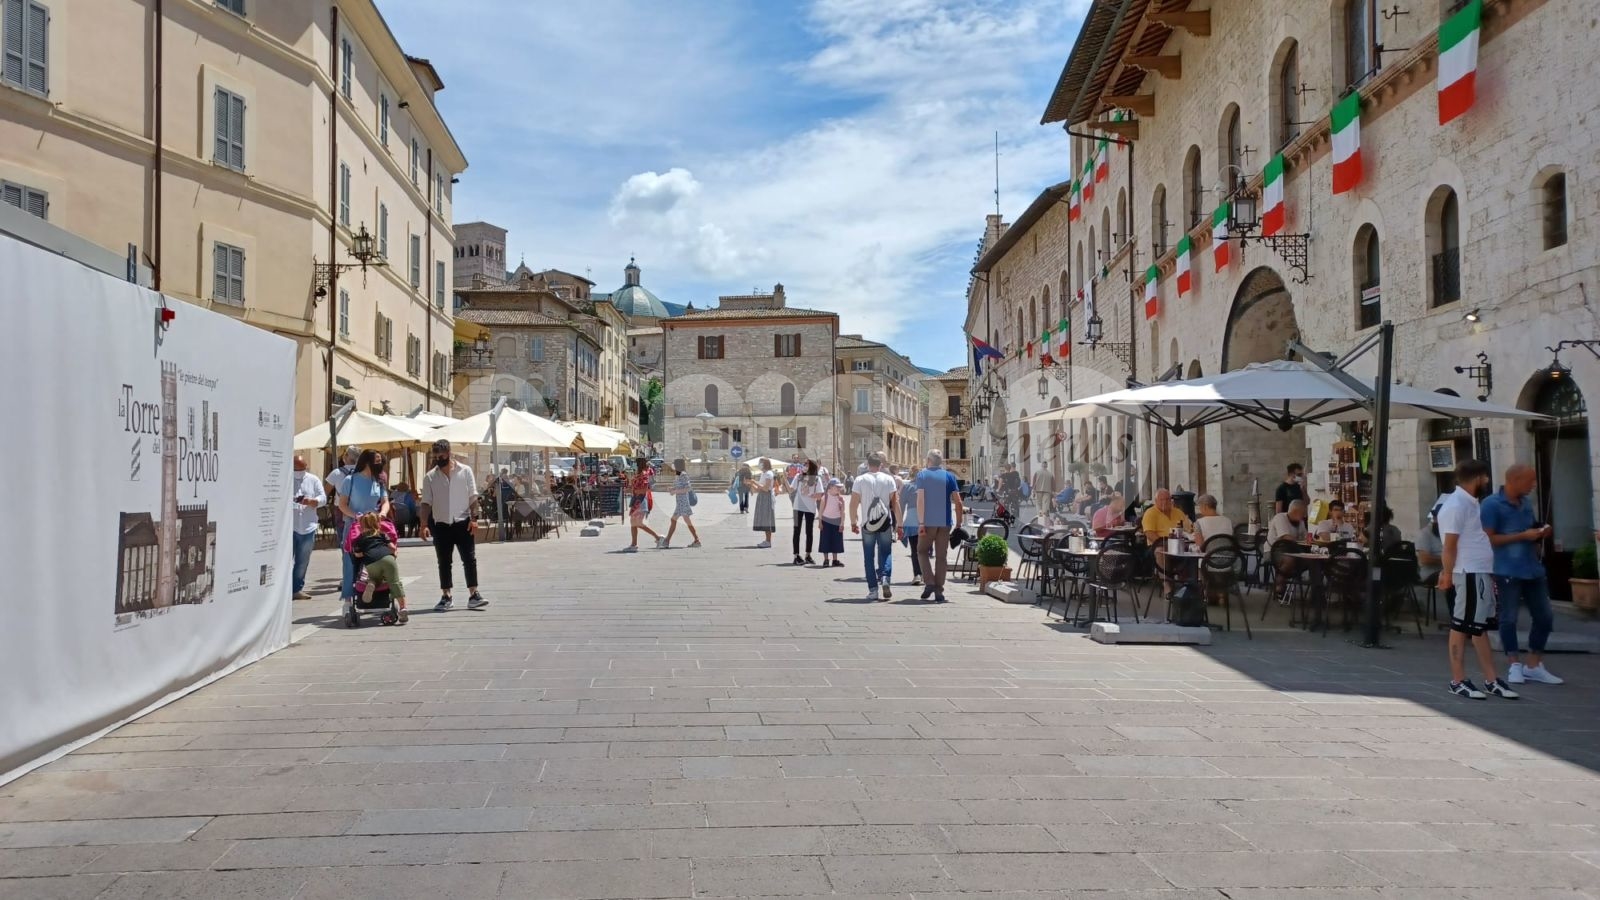 Turismo ad Assisi, la città non torna ai livelli pre Covid. Lega: "Proietti pensa solo alla carriera"